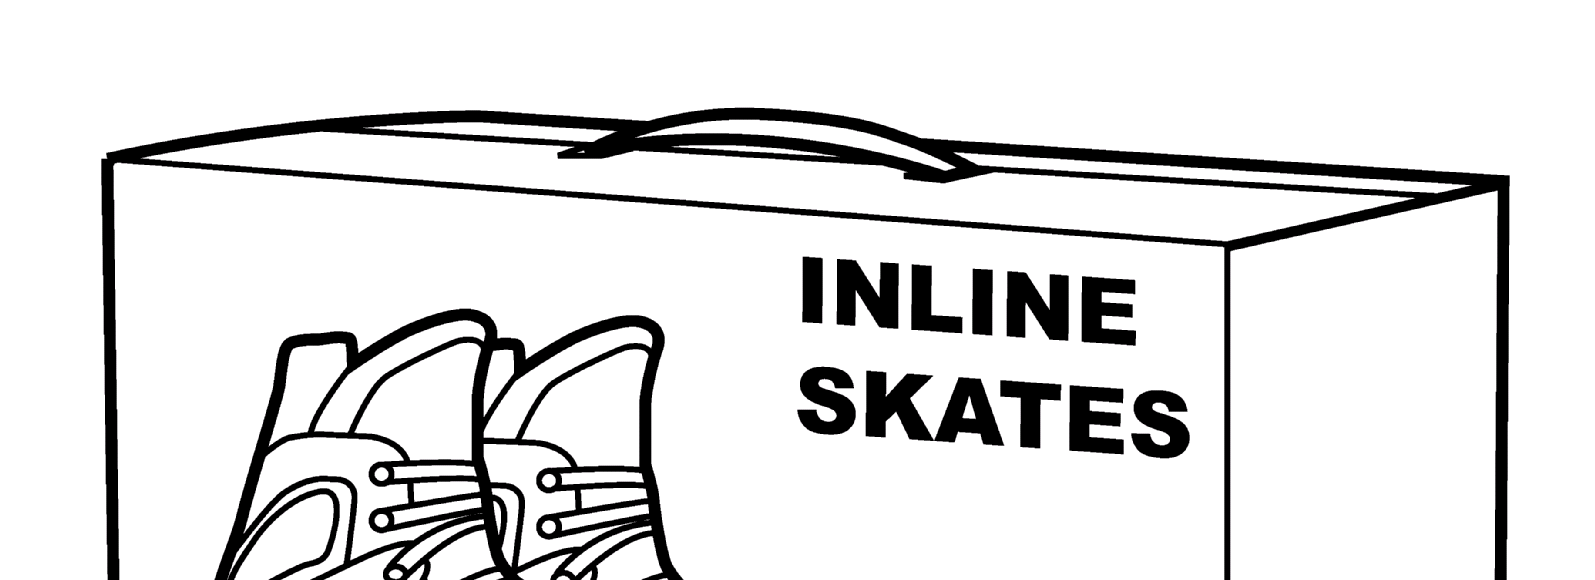 Figura 6.4.18.18-1 Esempio di Posizionamento di un Codice a Barre su una Scatola di Pattini Legenda: Inline skates Front Back Pattini a rotelle in linea Fronte Retro 6.4.18.19.